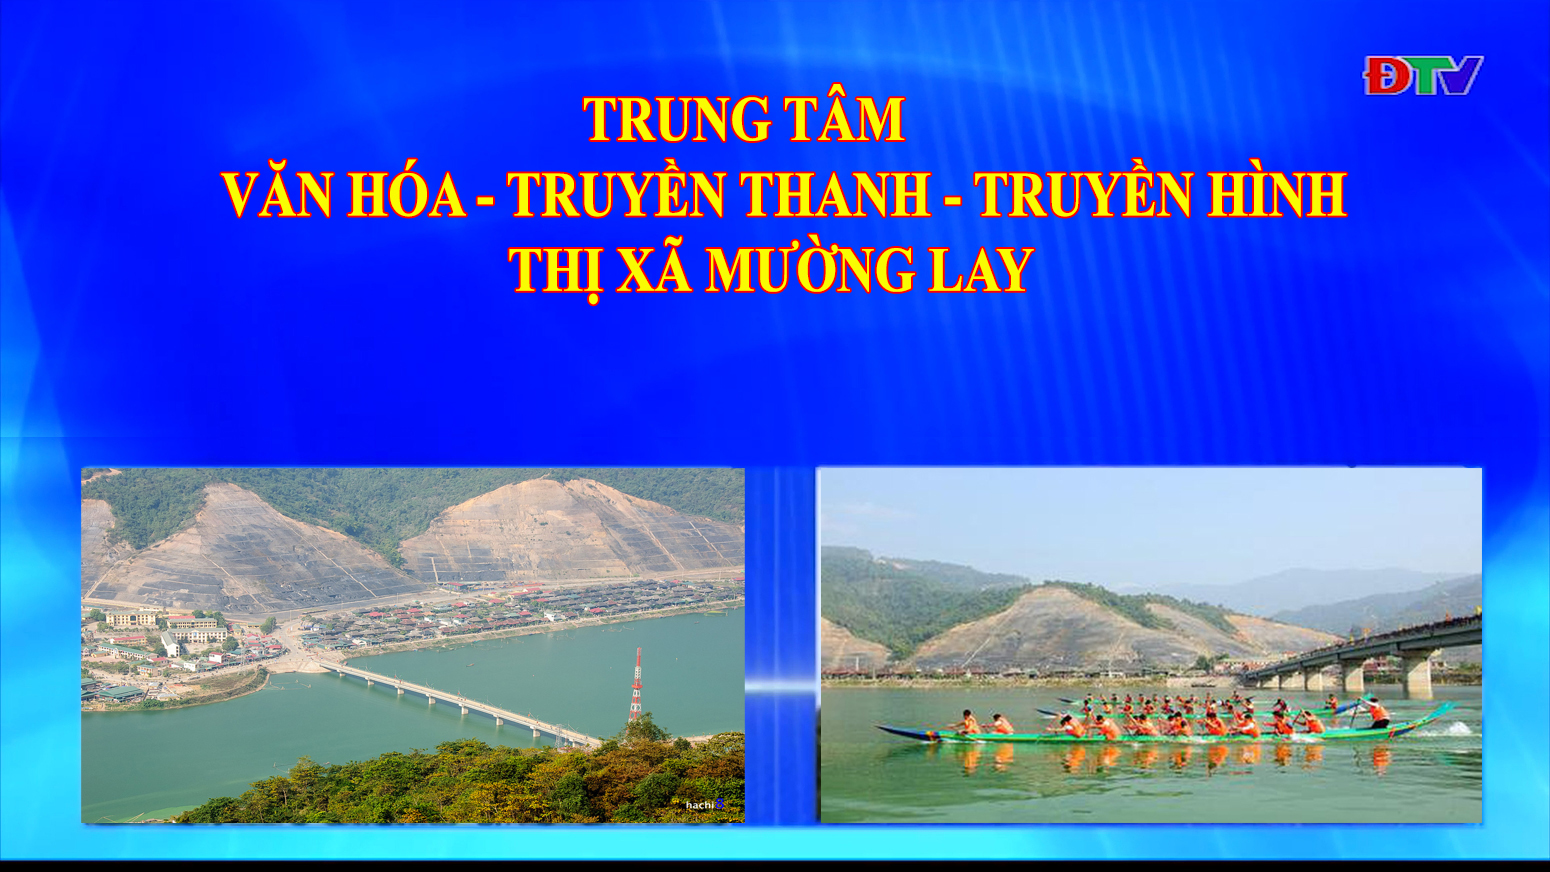 Trung tâm VH-TTTH thị xã Mường Lay (Ngày 11-3-2022)